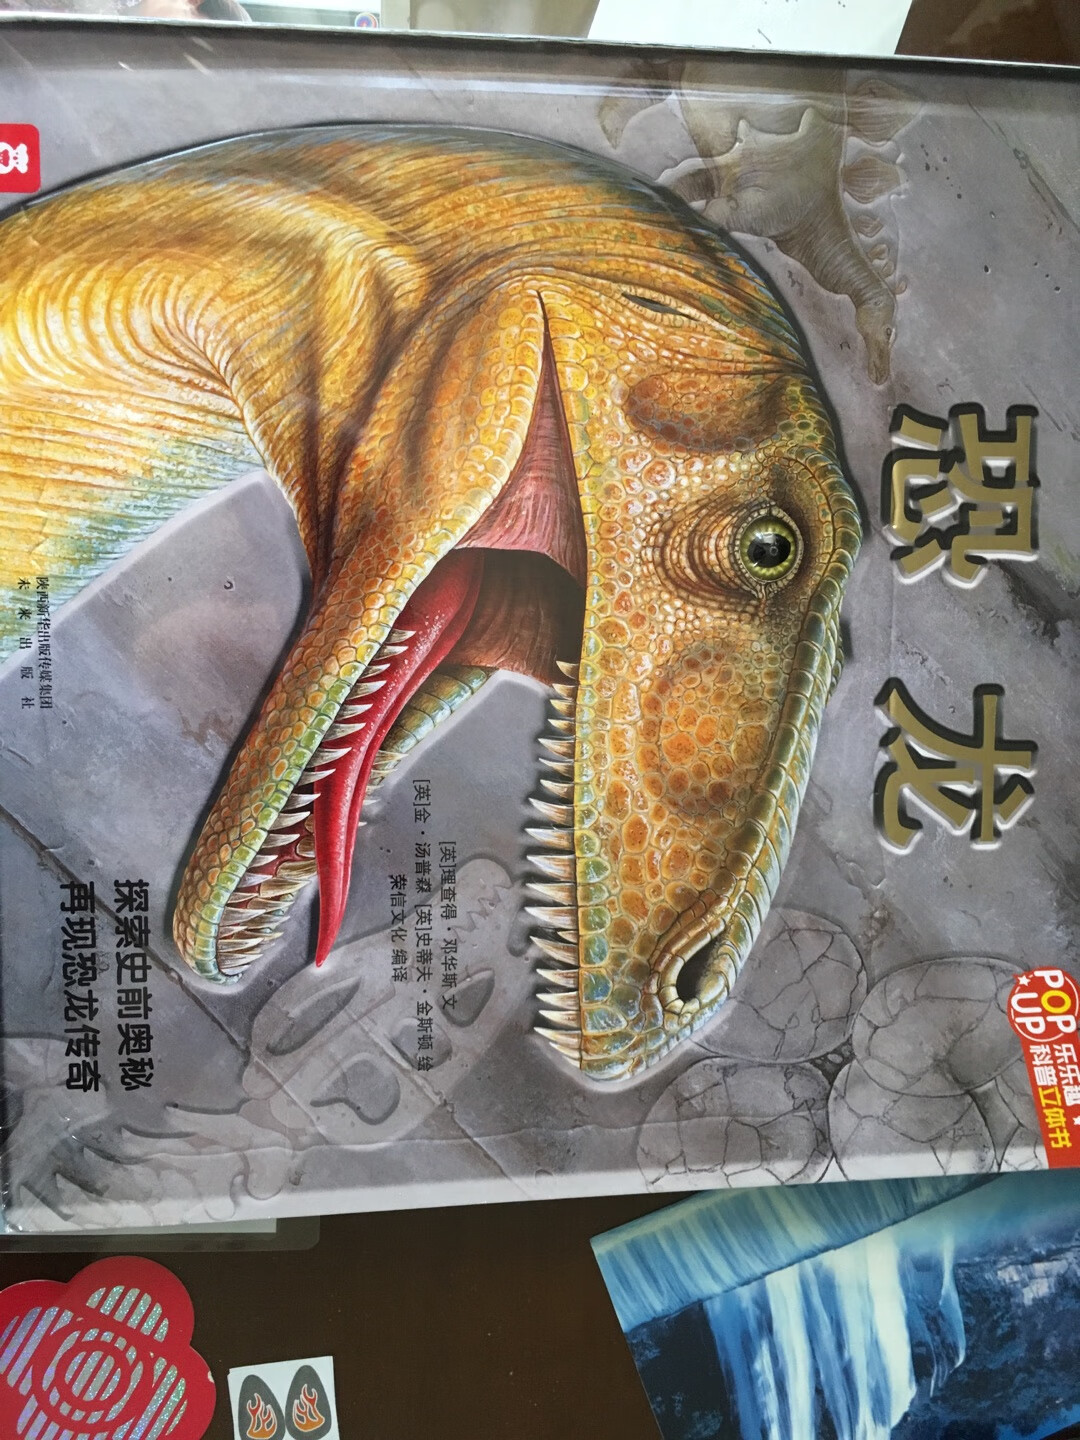 我家小宝最喜欢恐龙的书了，对恐龙很感兴趣，这本恐龙立体书很生动，值得购买。